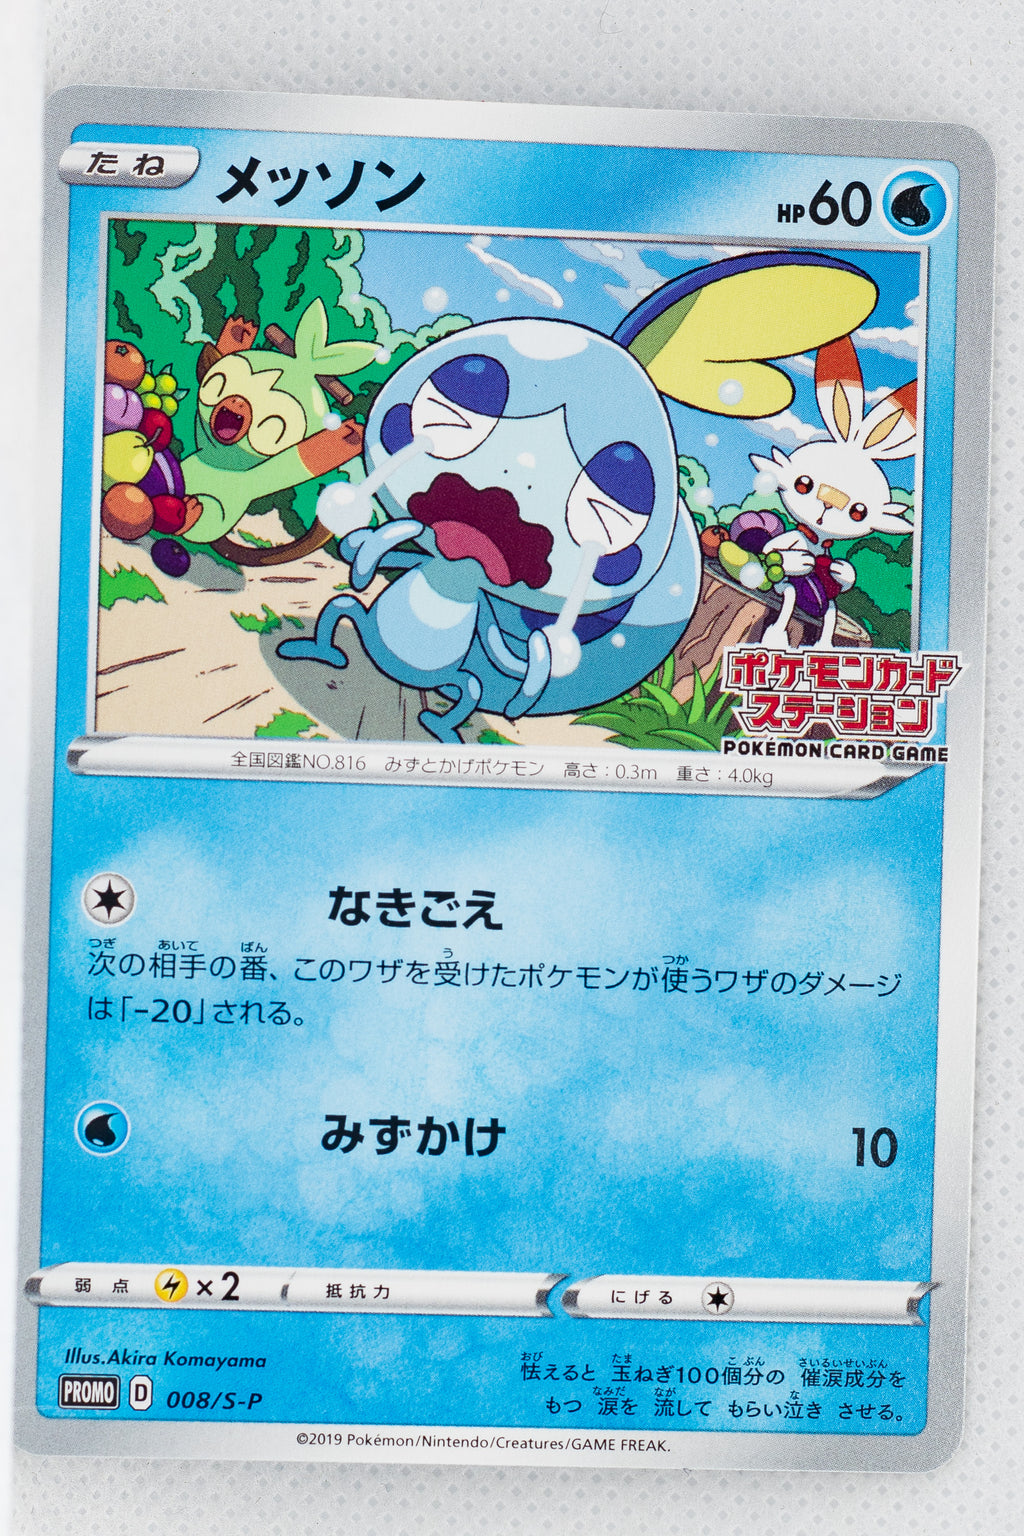 008/S-P Sobble Pokémon Card Station Event Participation Prize